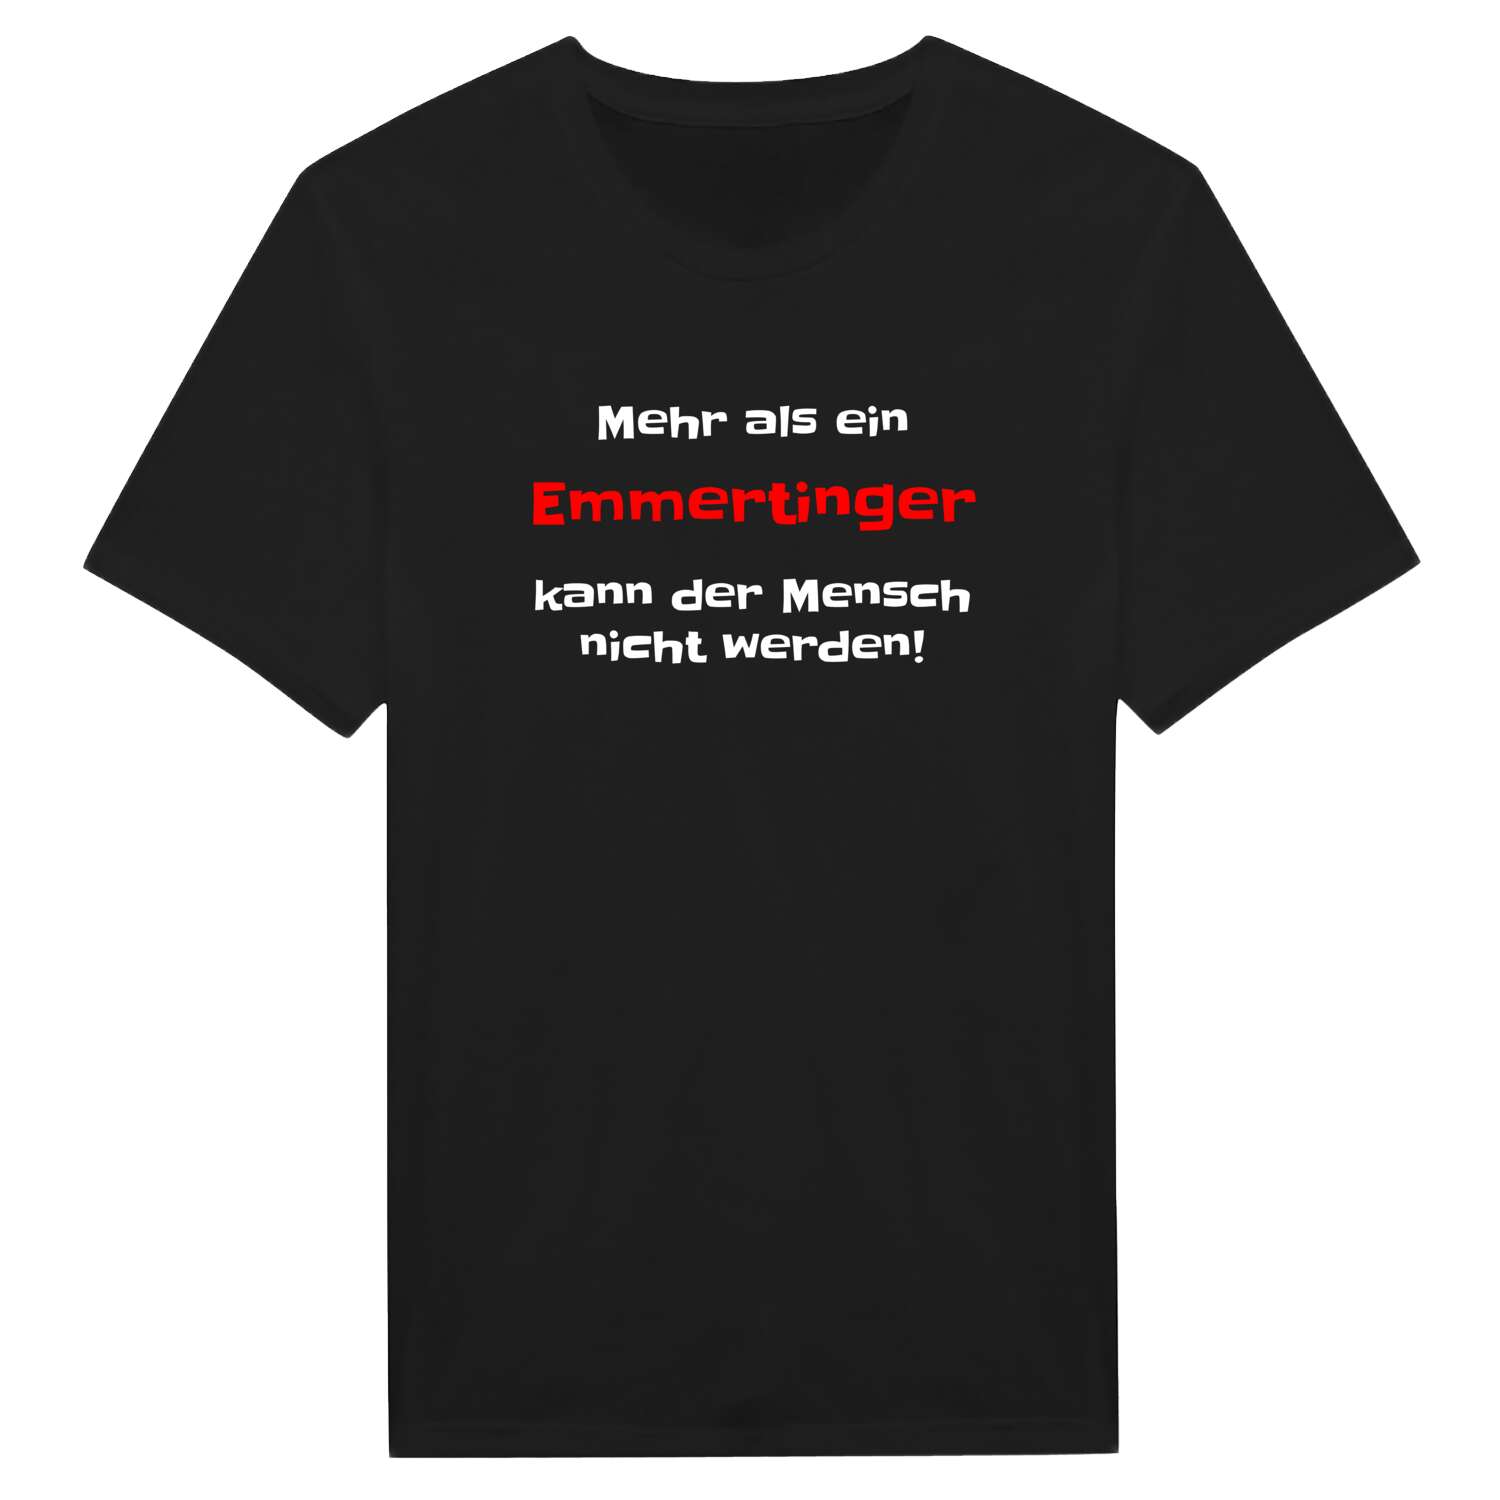 Emmerting T-Shirt »Mehr als ein«